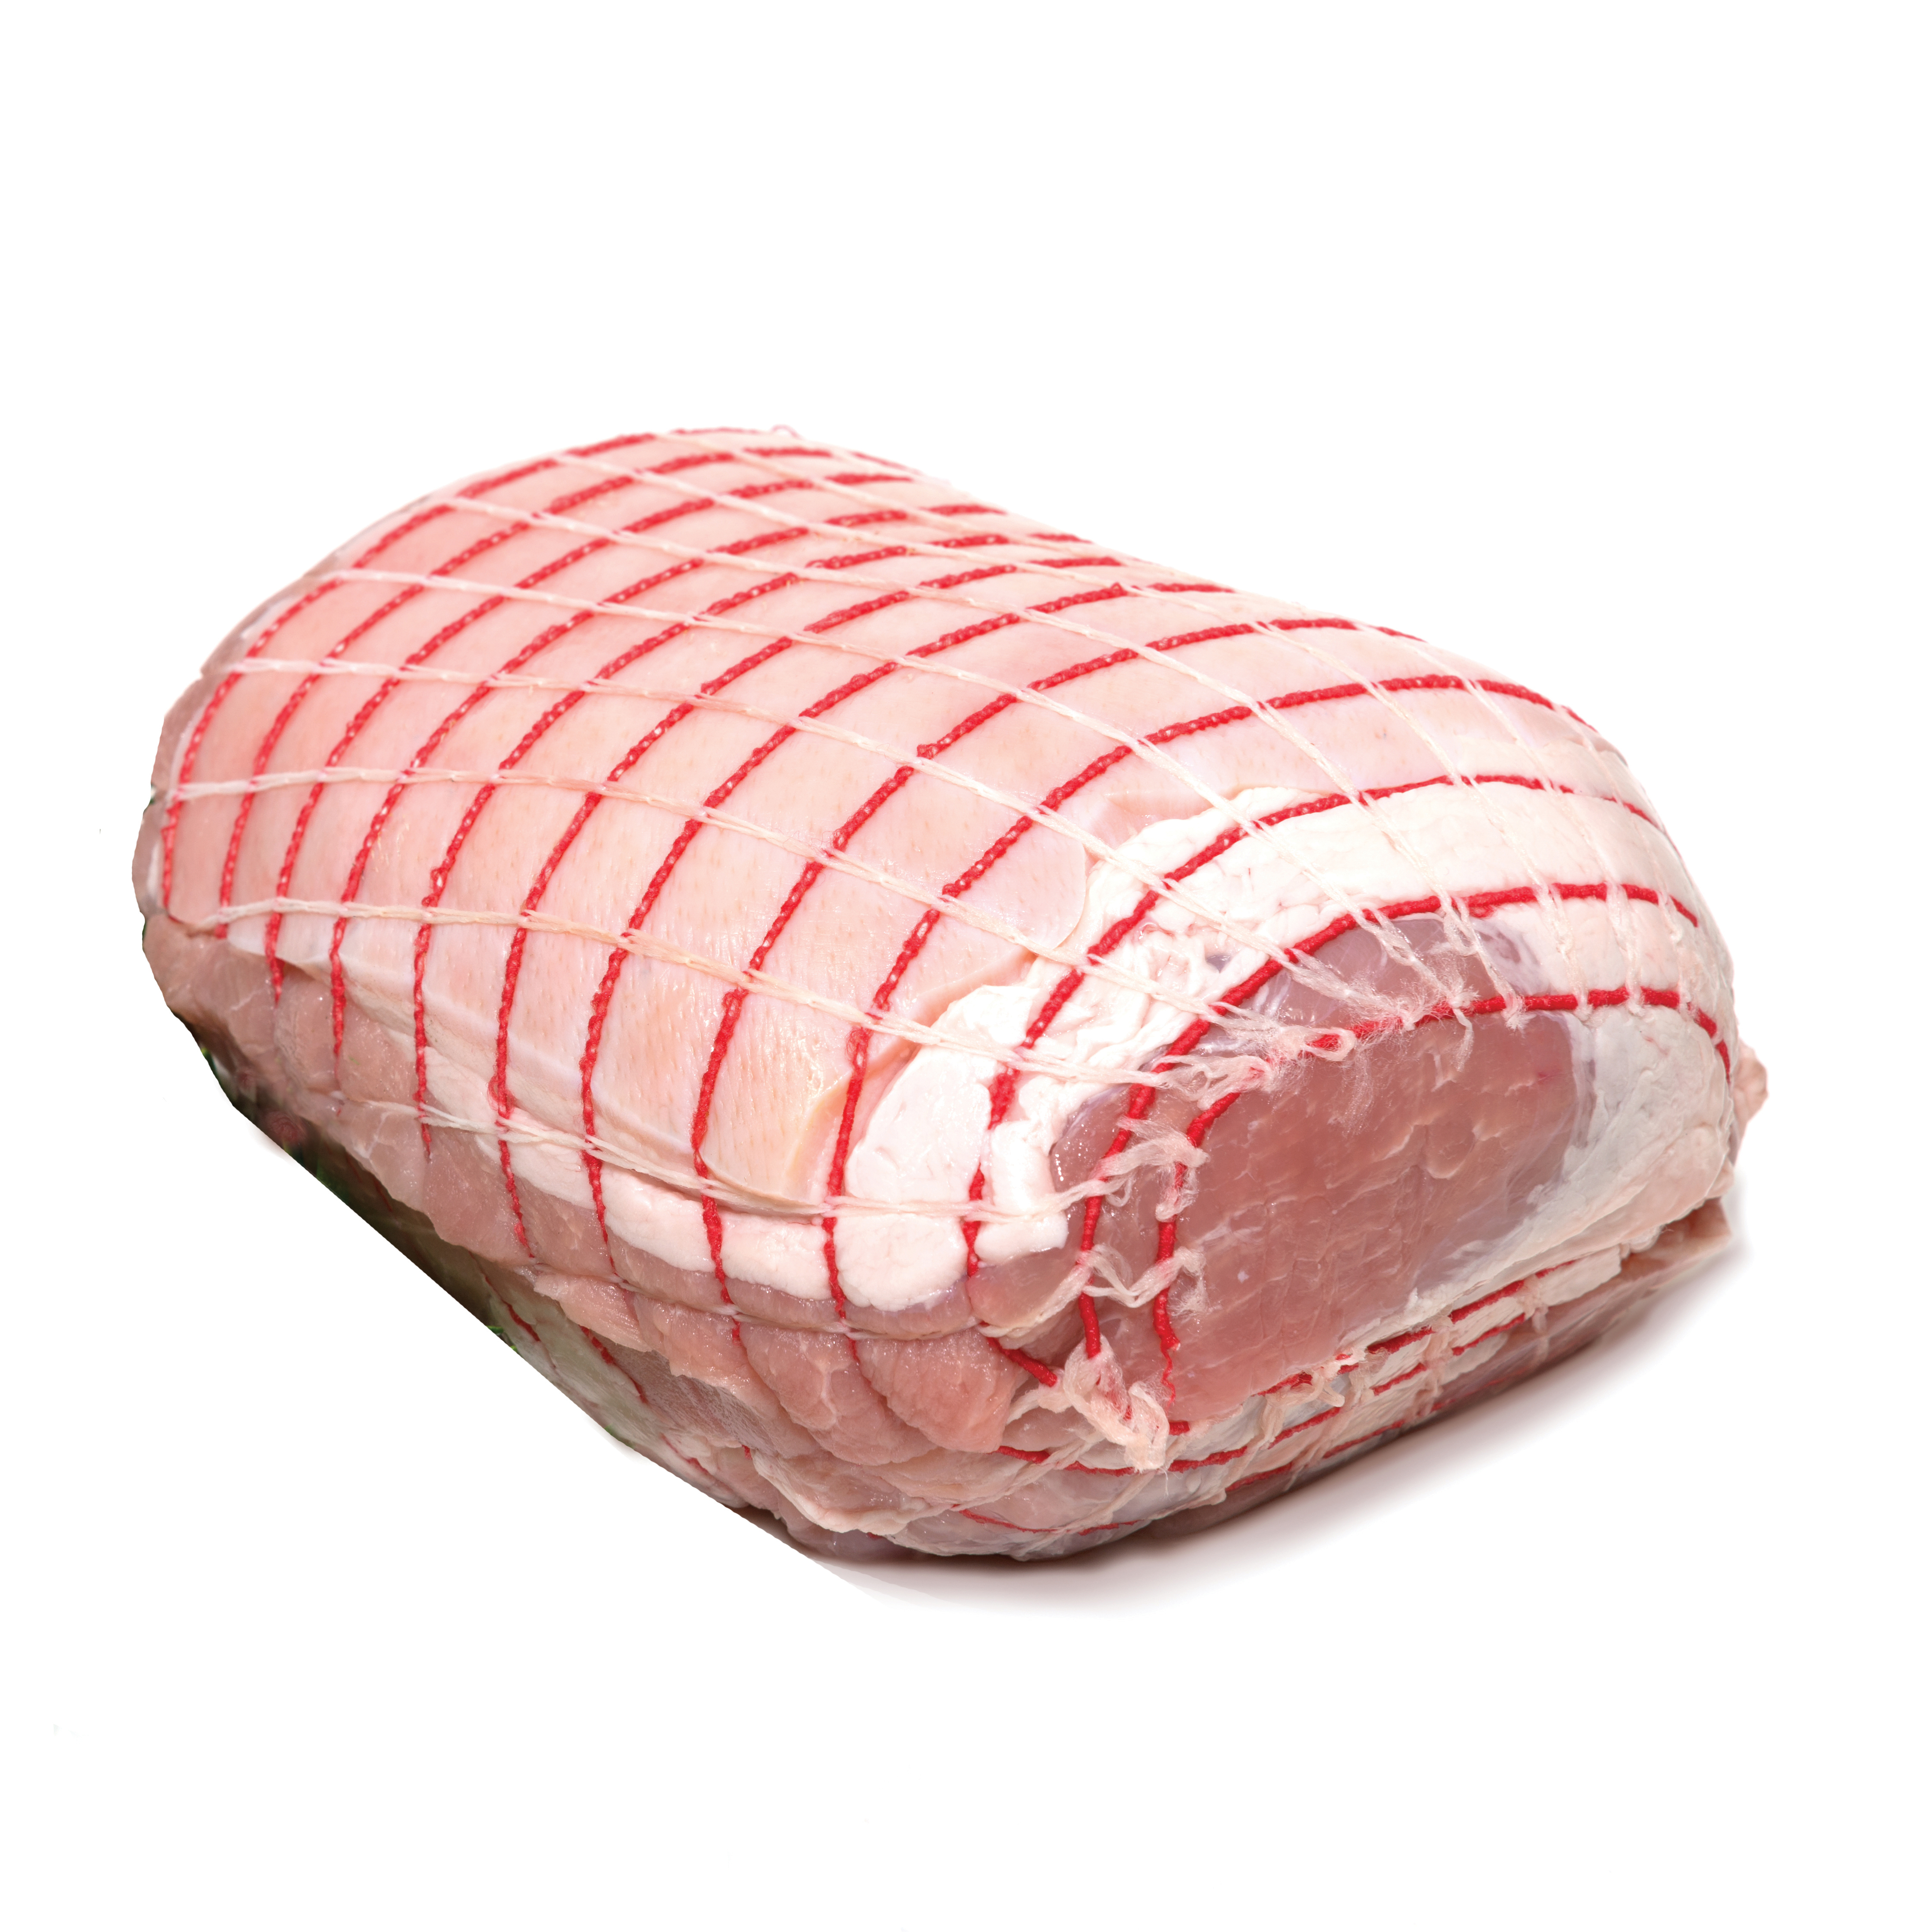 Australian Wholesale Pork - Pork Leg Roast - Australian Pork Supplier